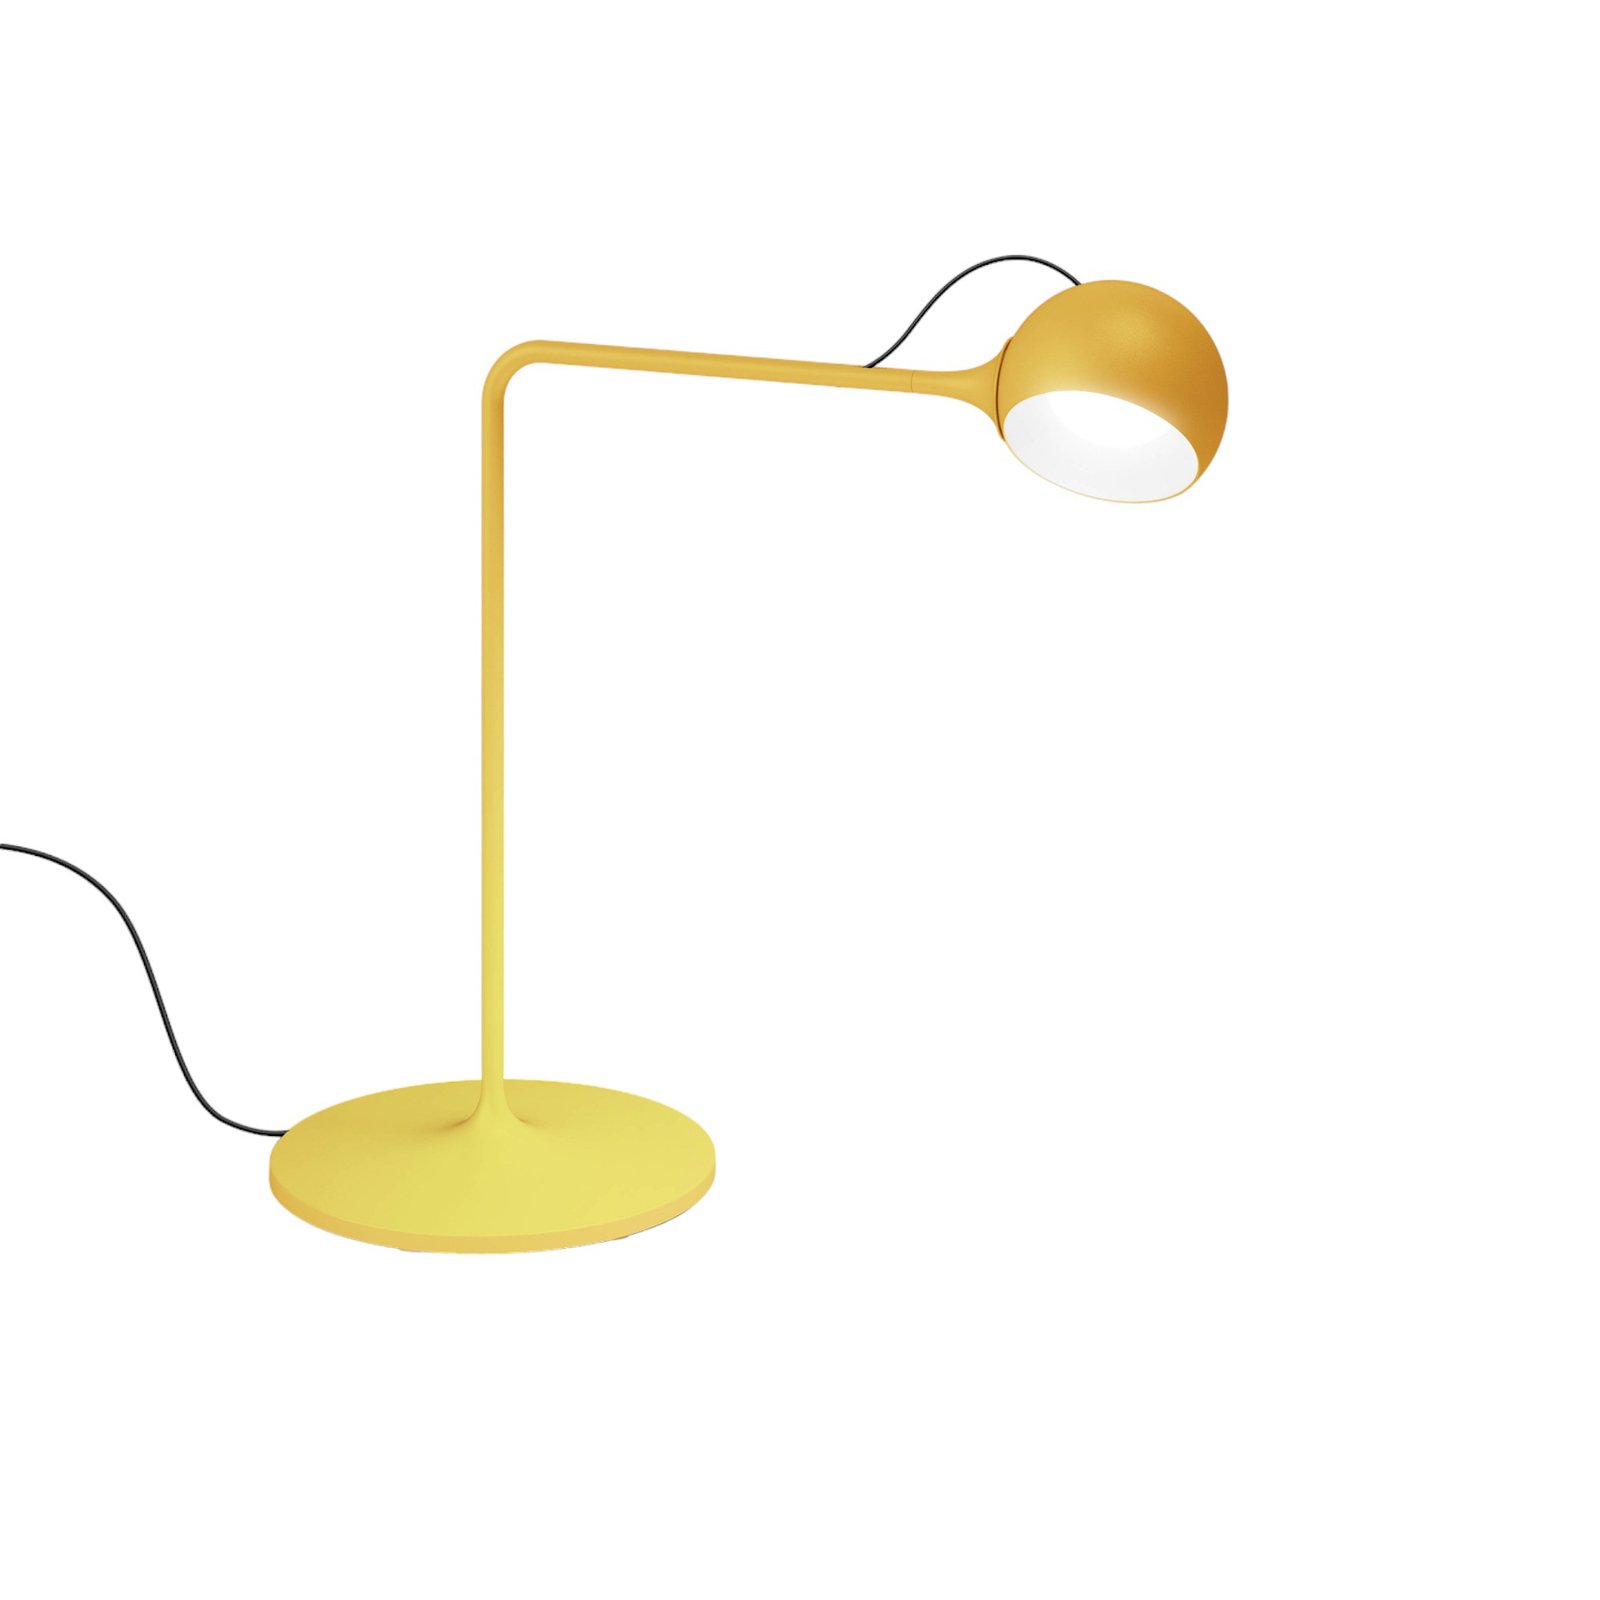 Artemide lxa LED asztali világítás, sárga